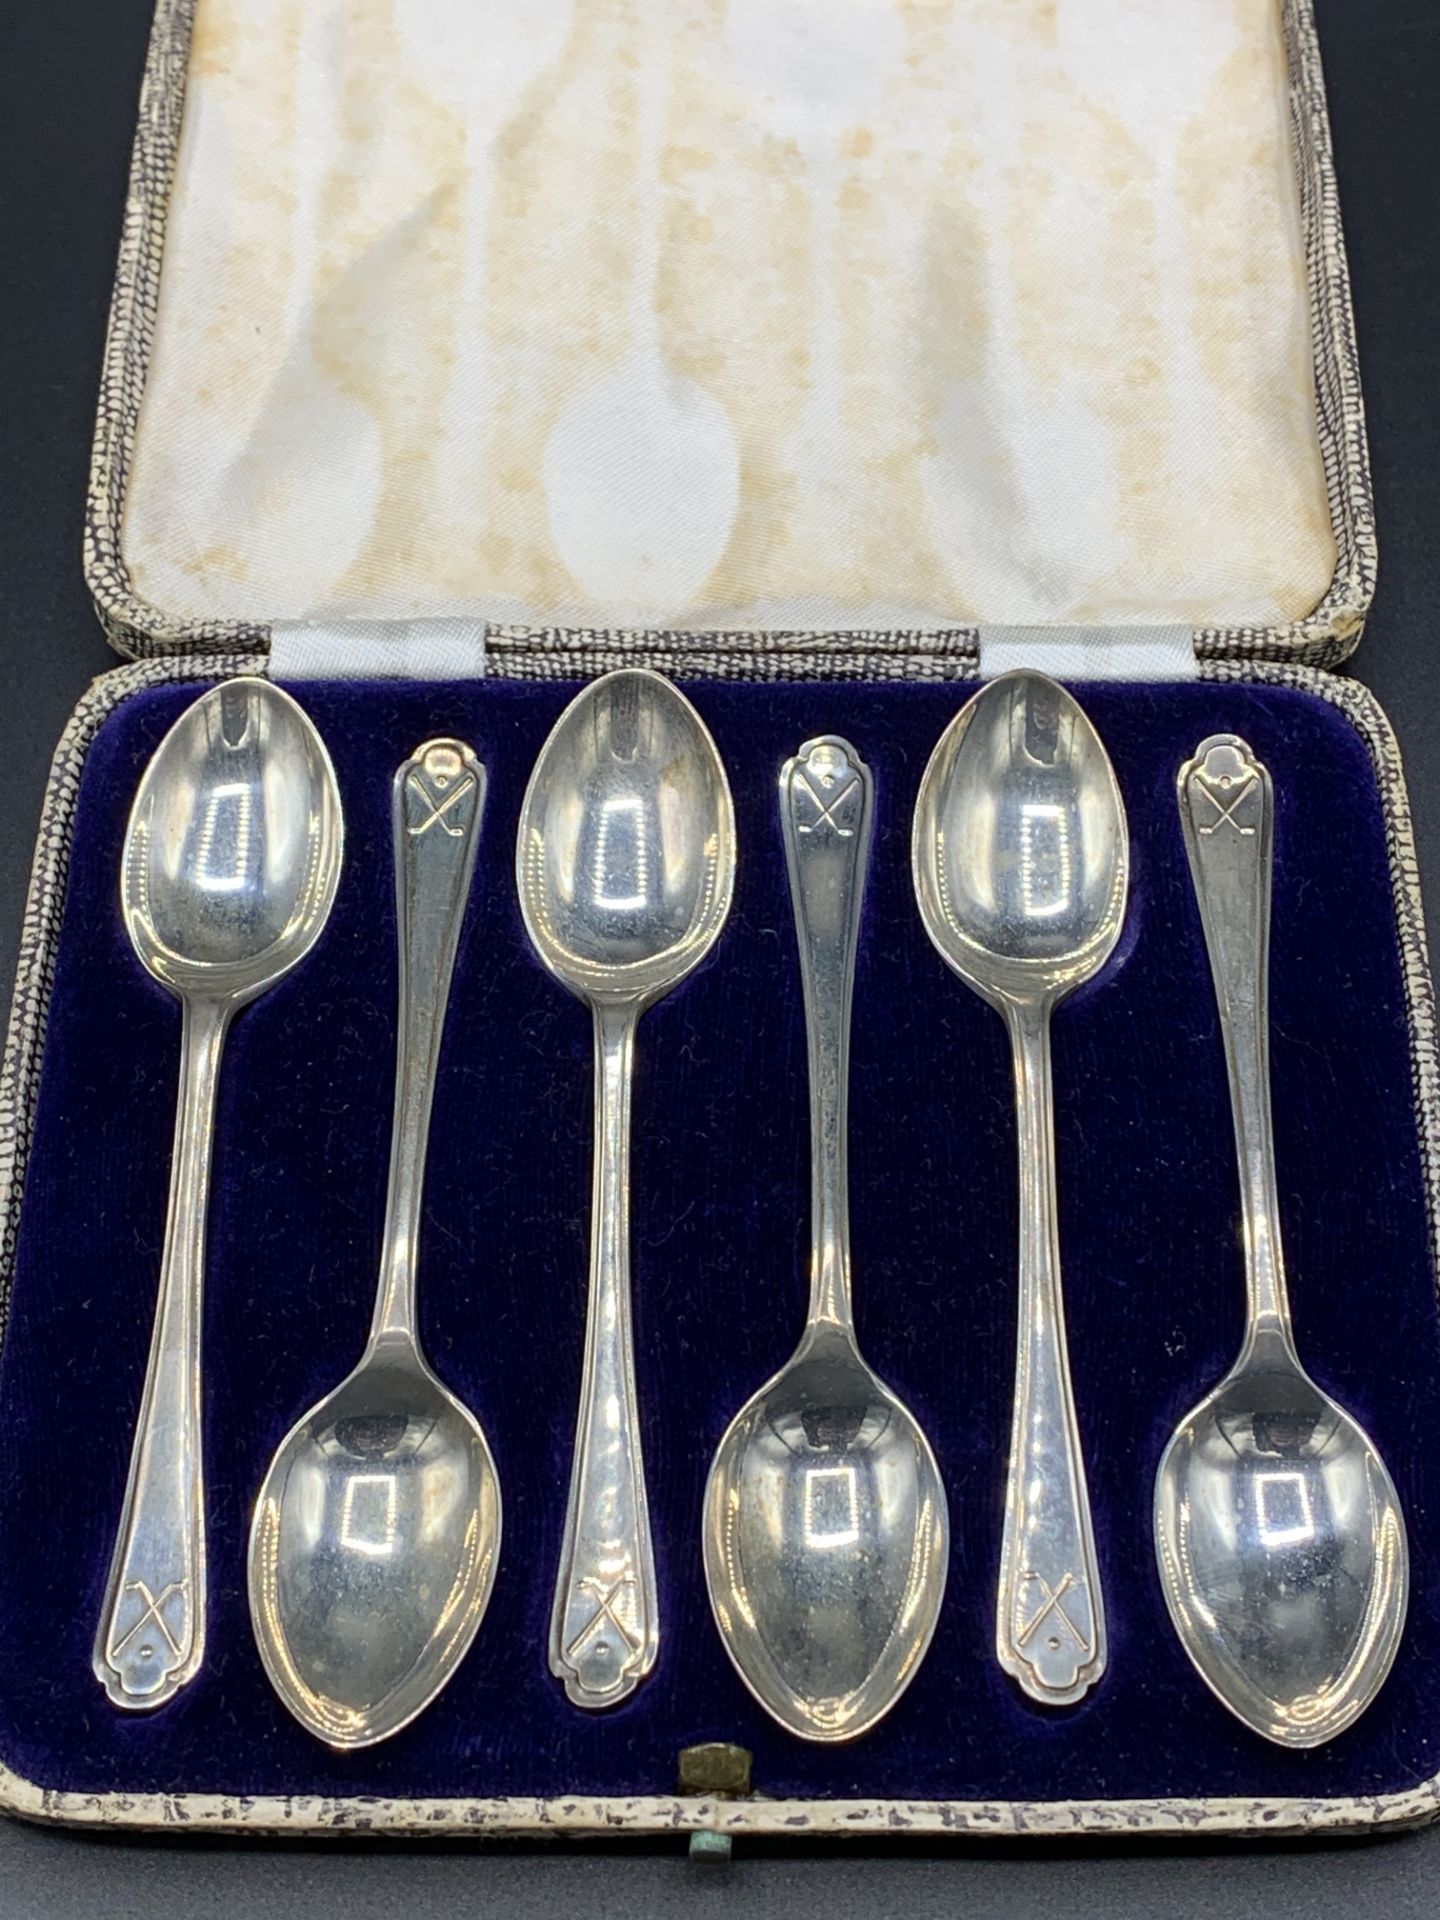 Six "golfers" silver teaspoons in case by Walker & Hall